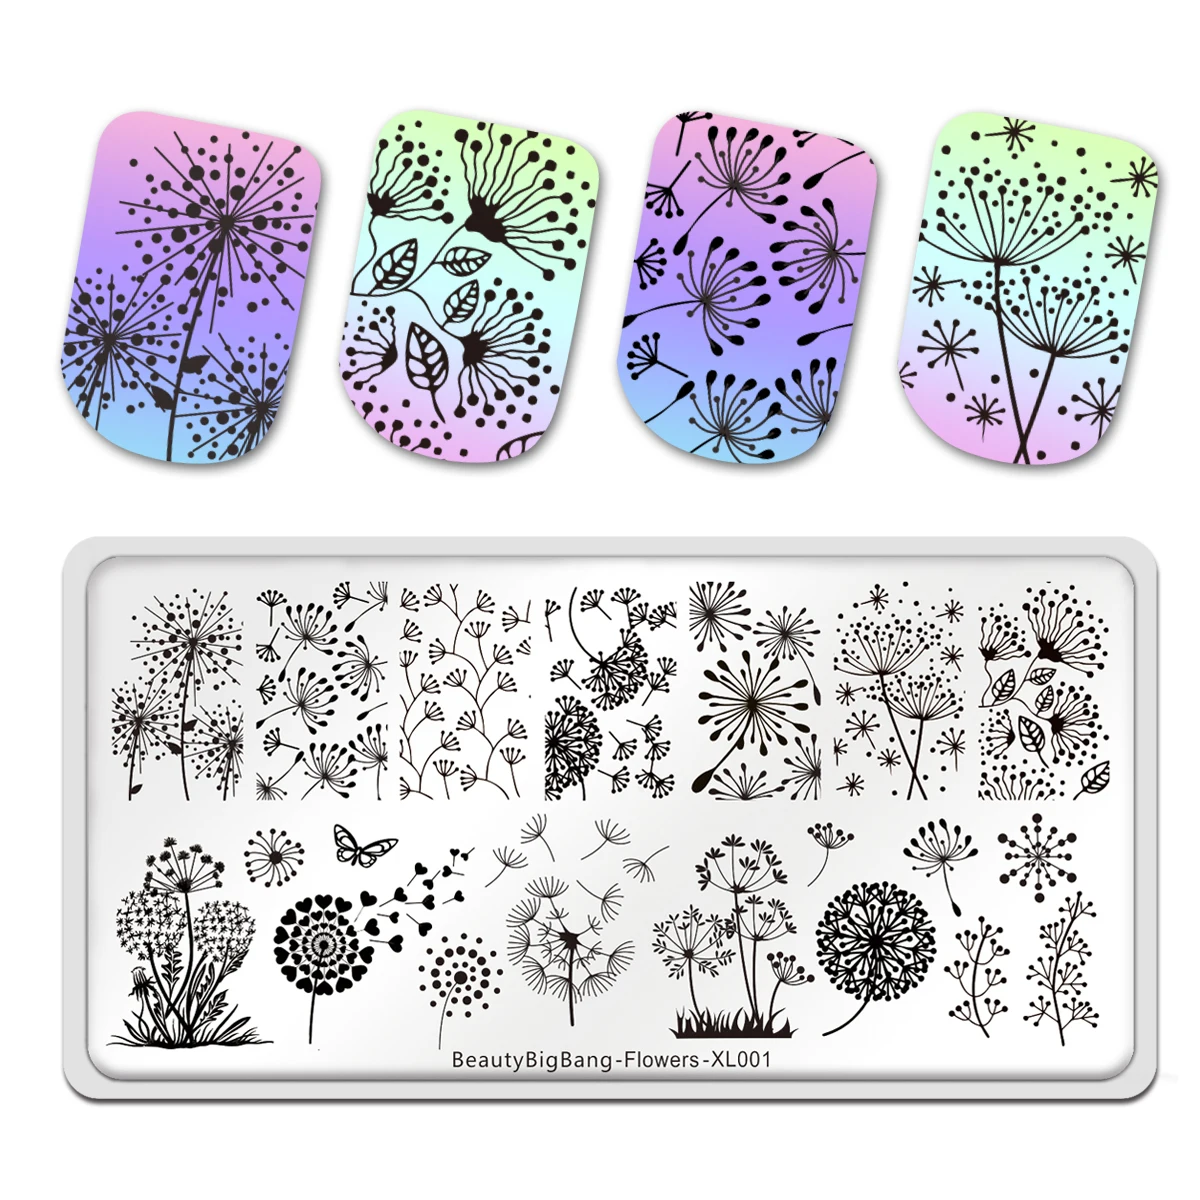 

Трафареты BeautyBigBang для дизайна ногтей, 6 х12 см, имитация одуванчика, шаблон для стемпинга, инструменты для дизайна ногтей, для творчества